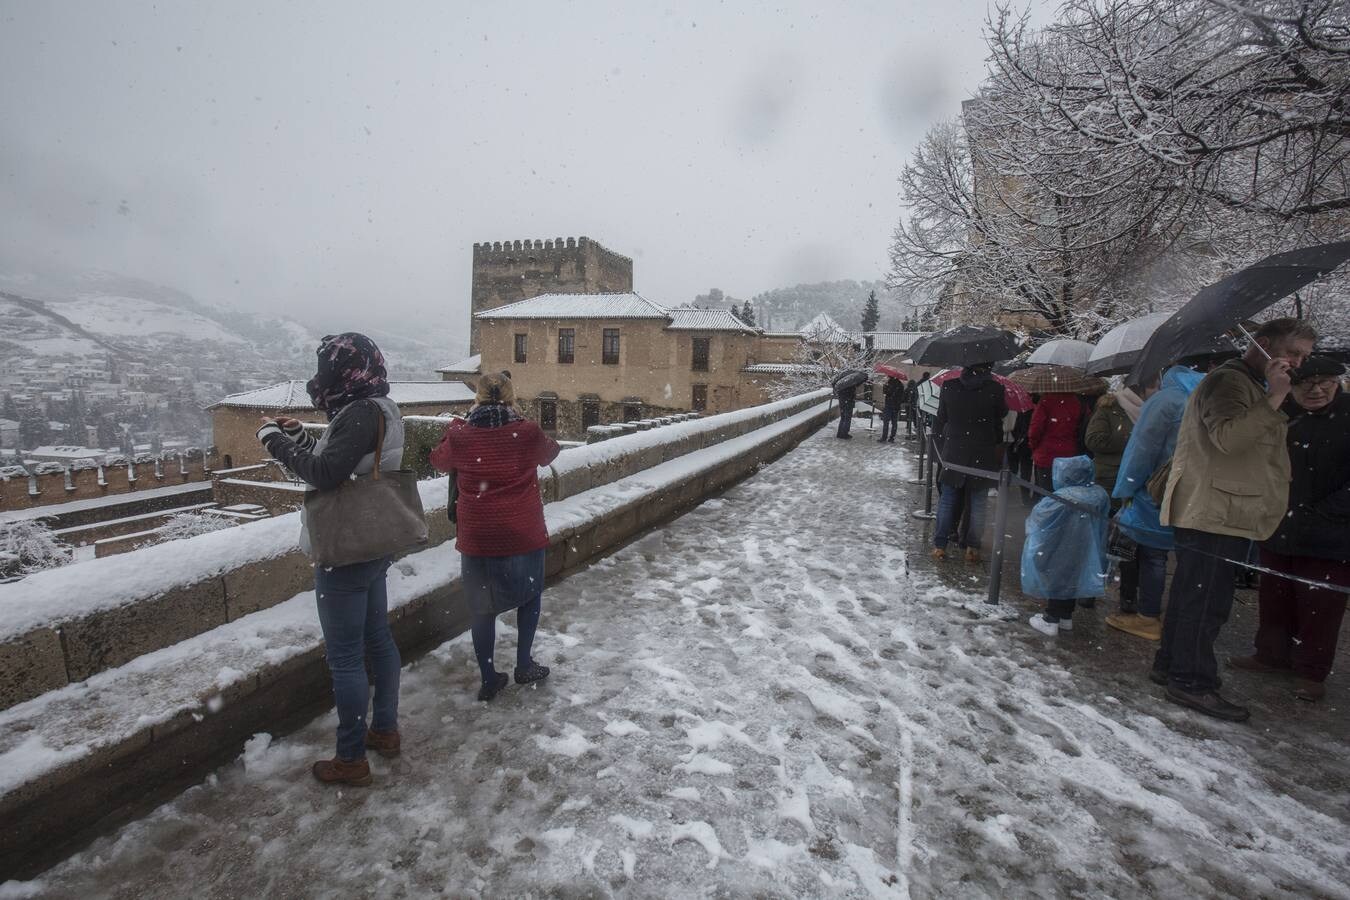 Fueron muchos los que disfrutaron del privilegio de ver el monumento nazarí cubierto de nieve